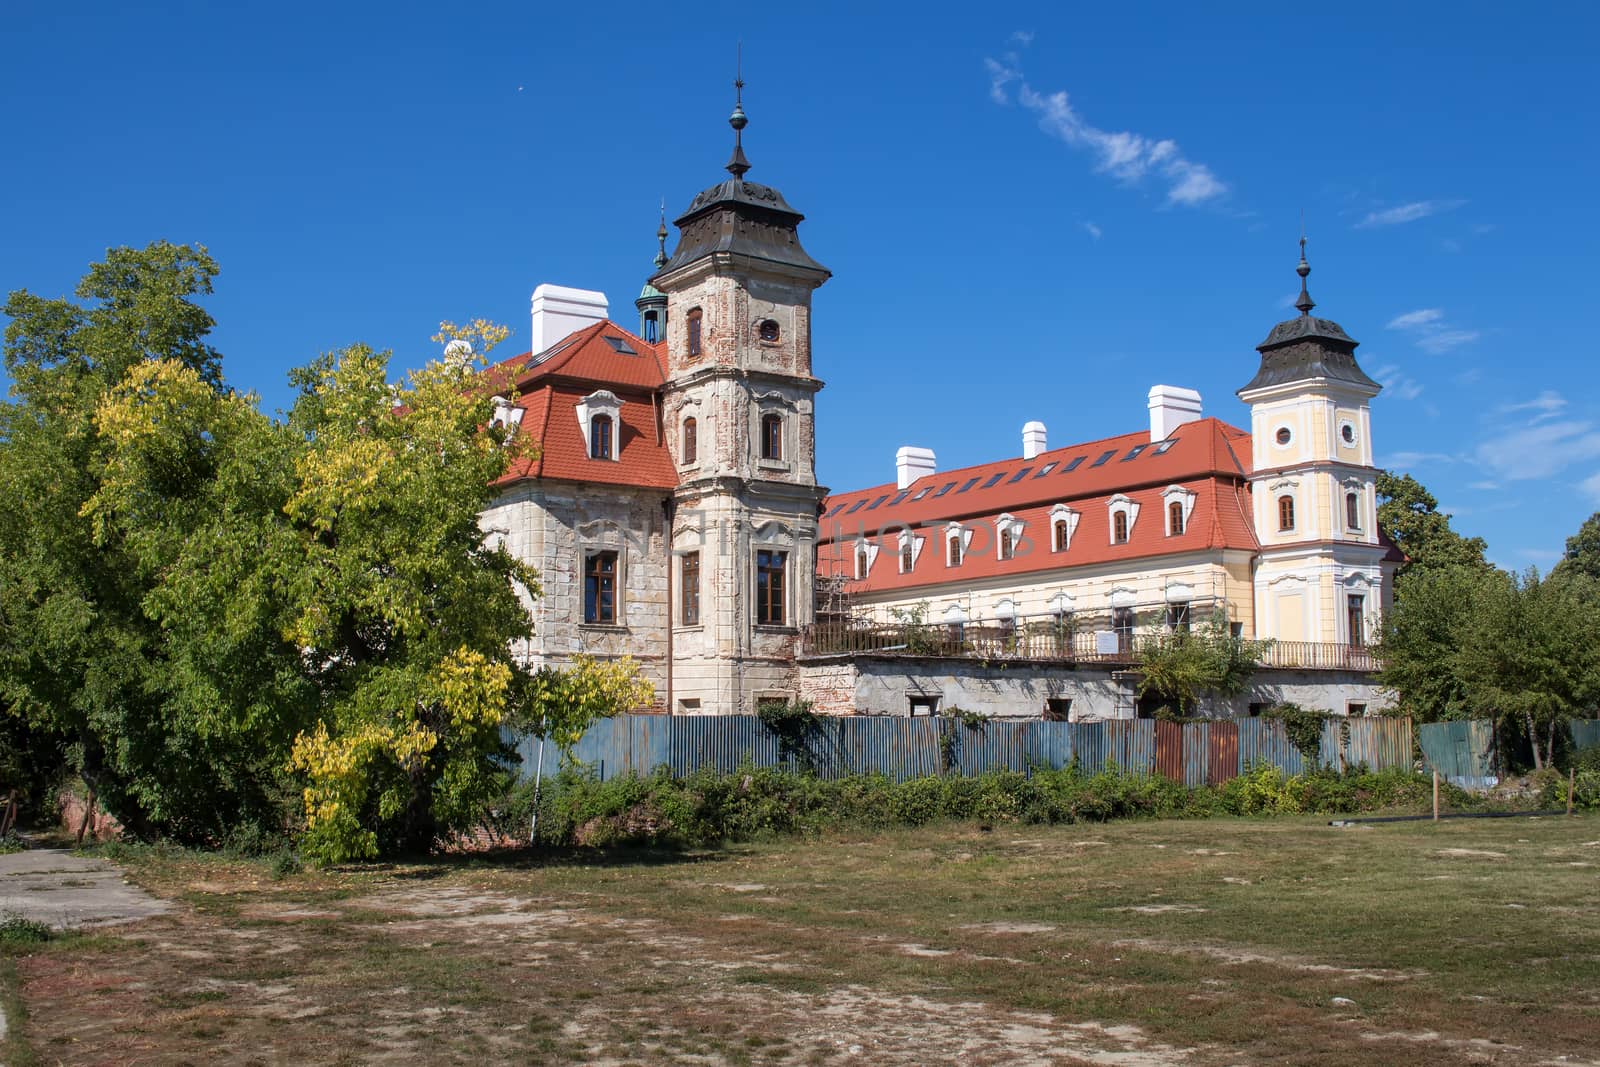 Manor-House in Bernolakovo, Slovakia by YassminPhoto